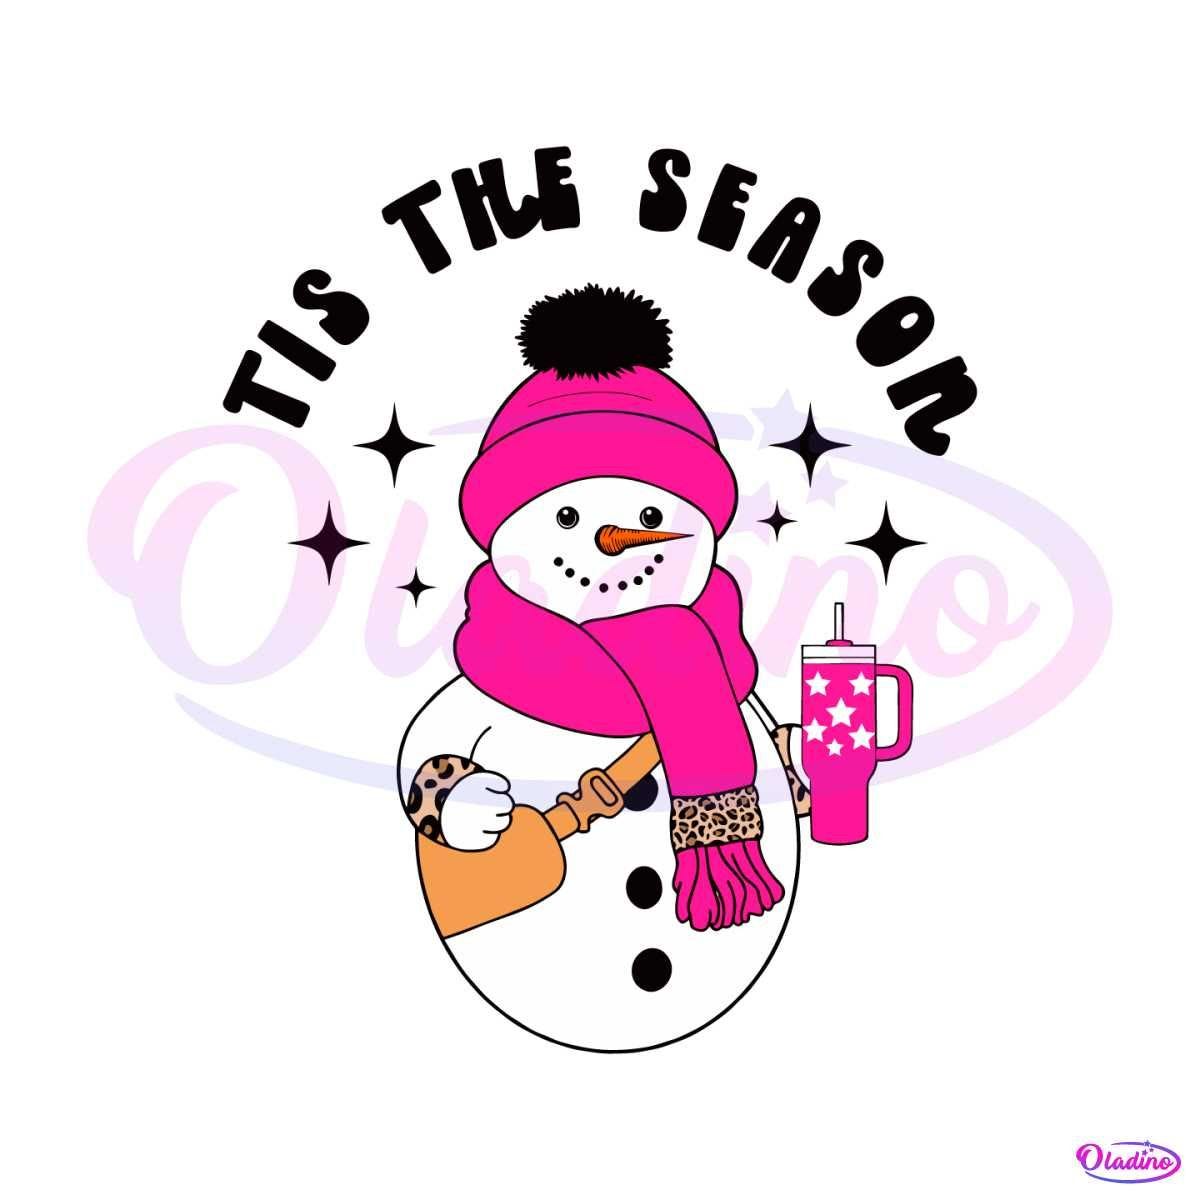 Tis The Season Cute Snowman SVG